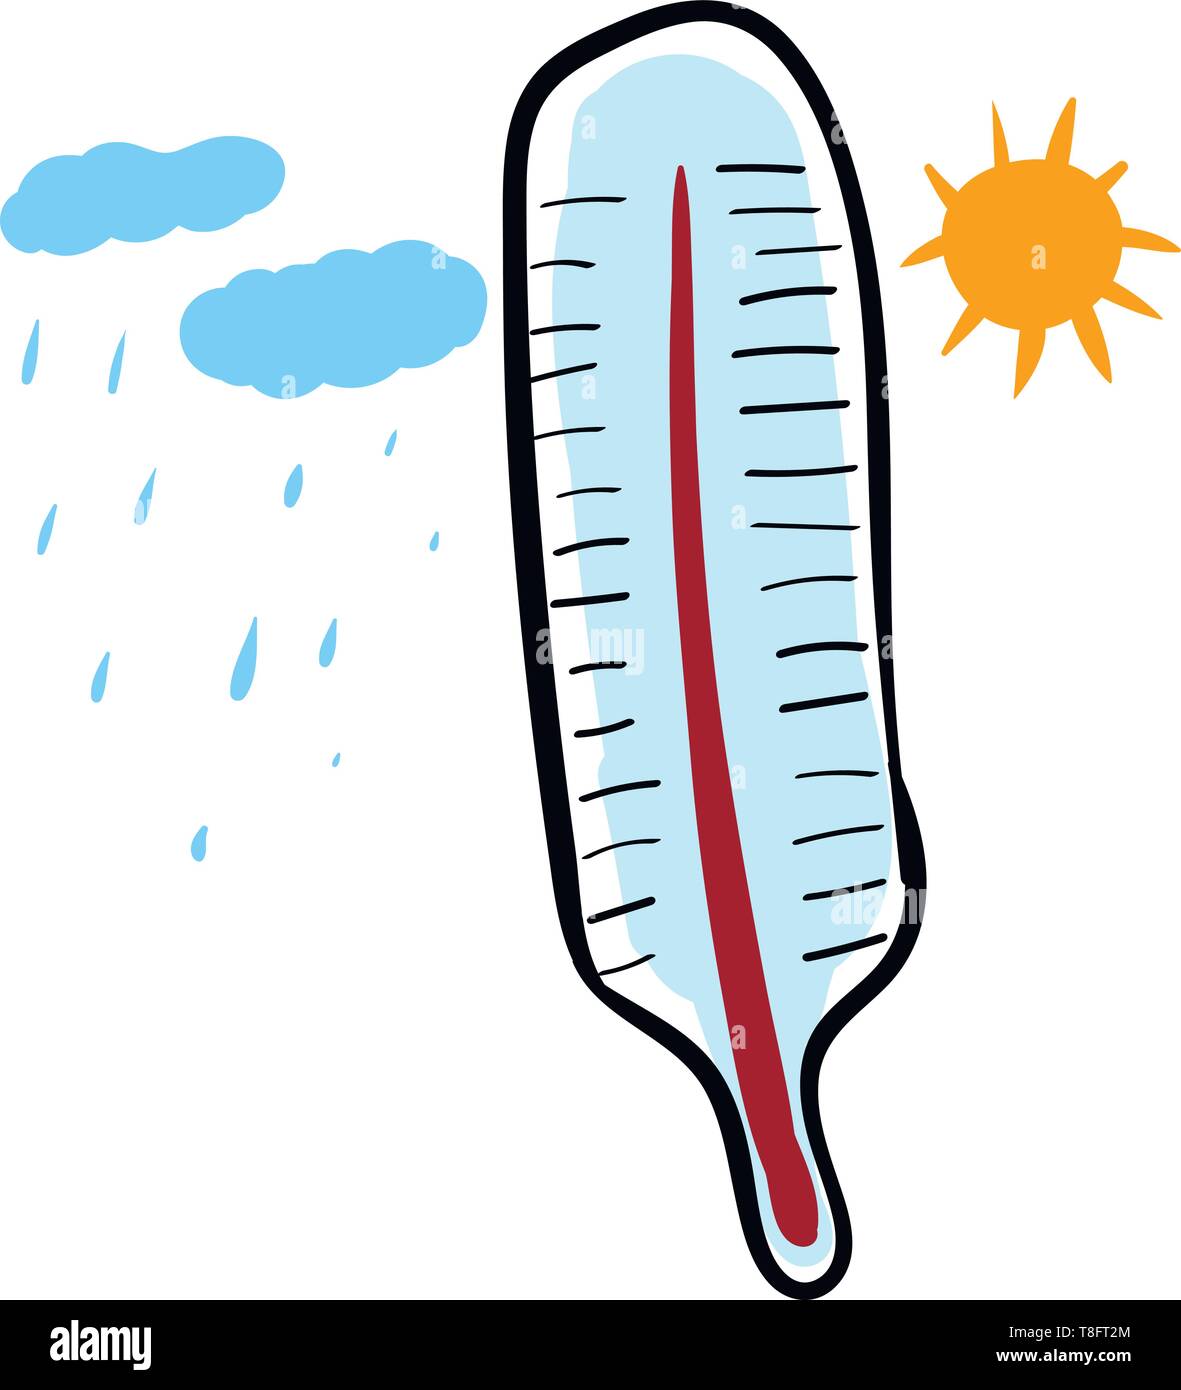 Malerei des Thermometers mit Graduierung, die Quecksilber enthalten, gekennzeichnet ist inmitten eines sonnigen und regnerischen Tag, lustige Blicke, Vector, Farbe, Zeichnung oder Illus Stock Vektor